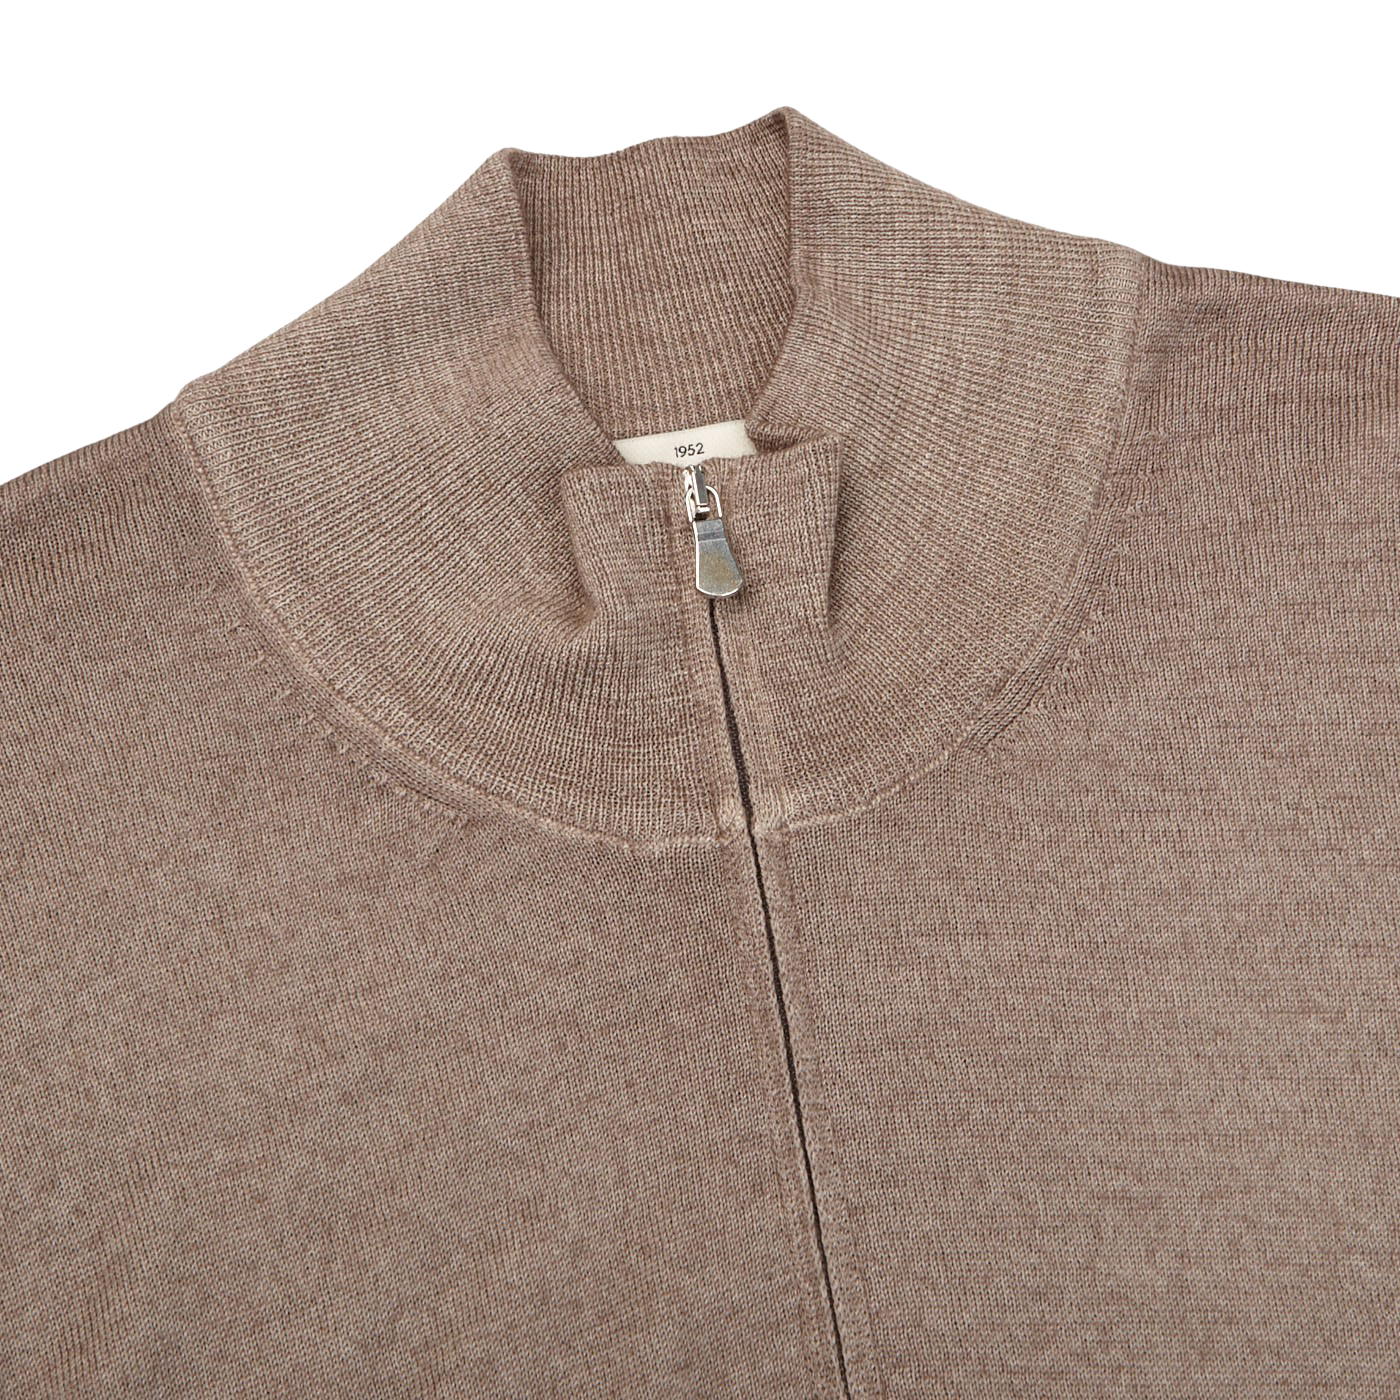 Gran Sasso Brown Vintage Merino Wool 1:4 Sweater Collar